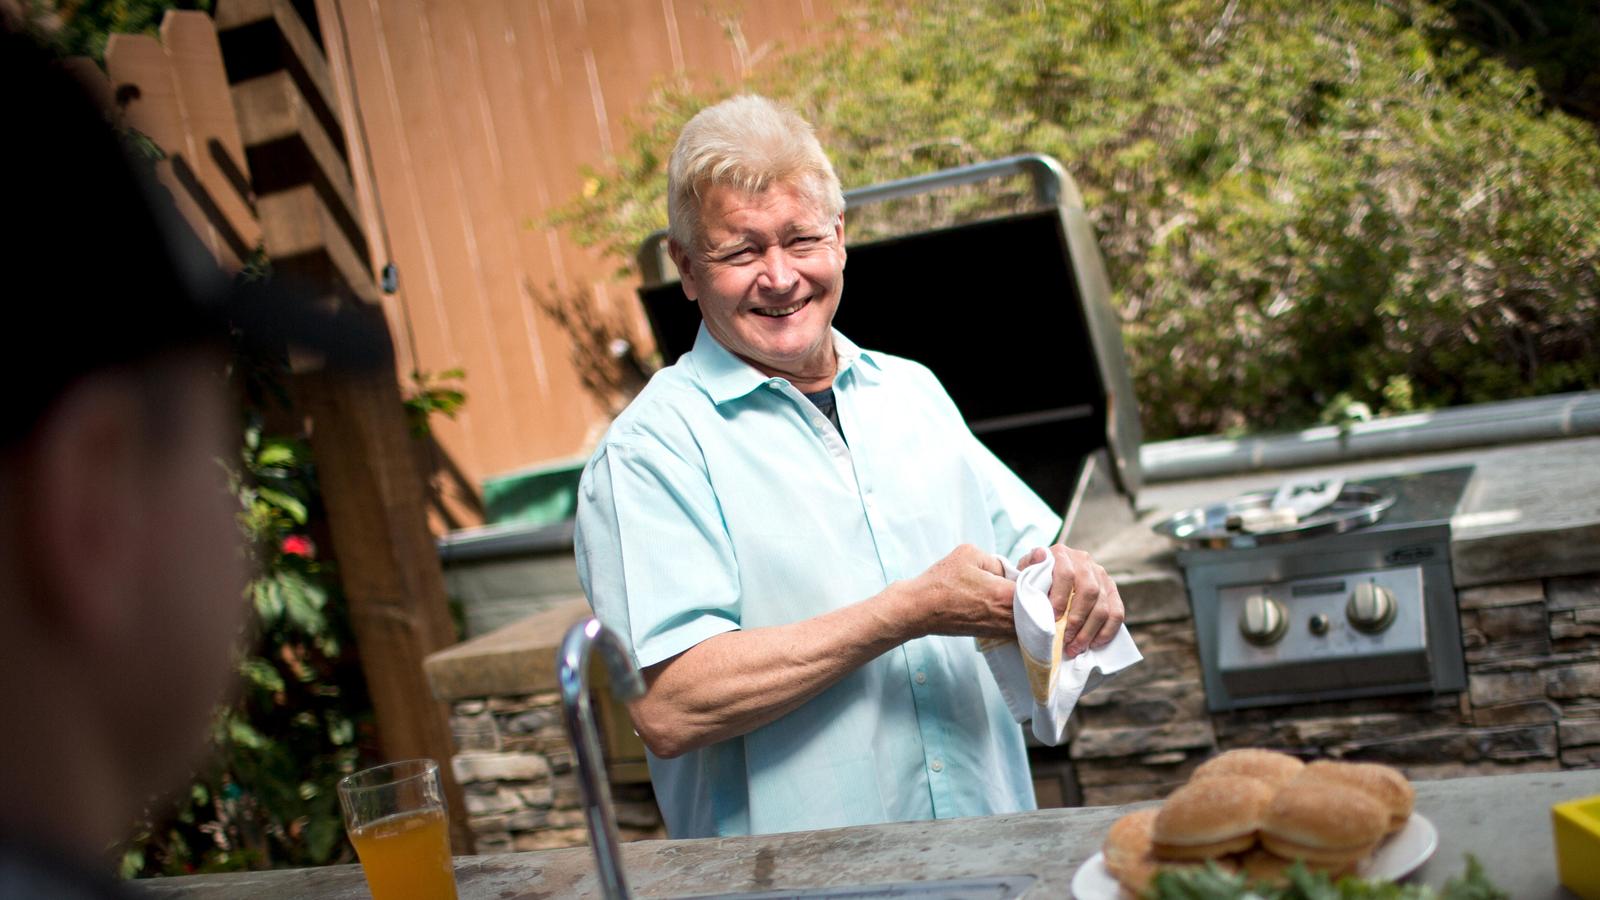 A man smiles at the camera at a BBQ